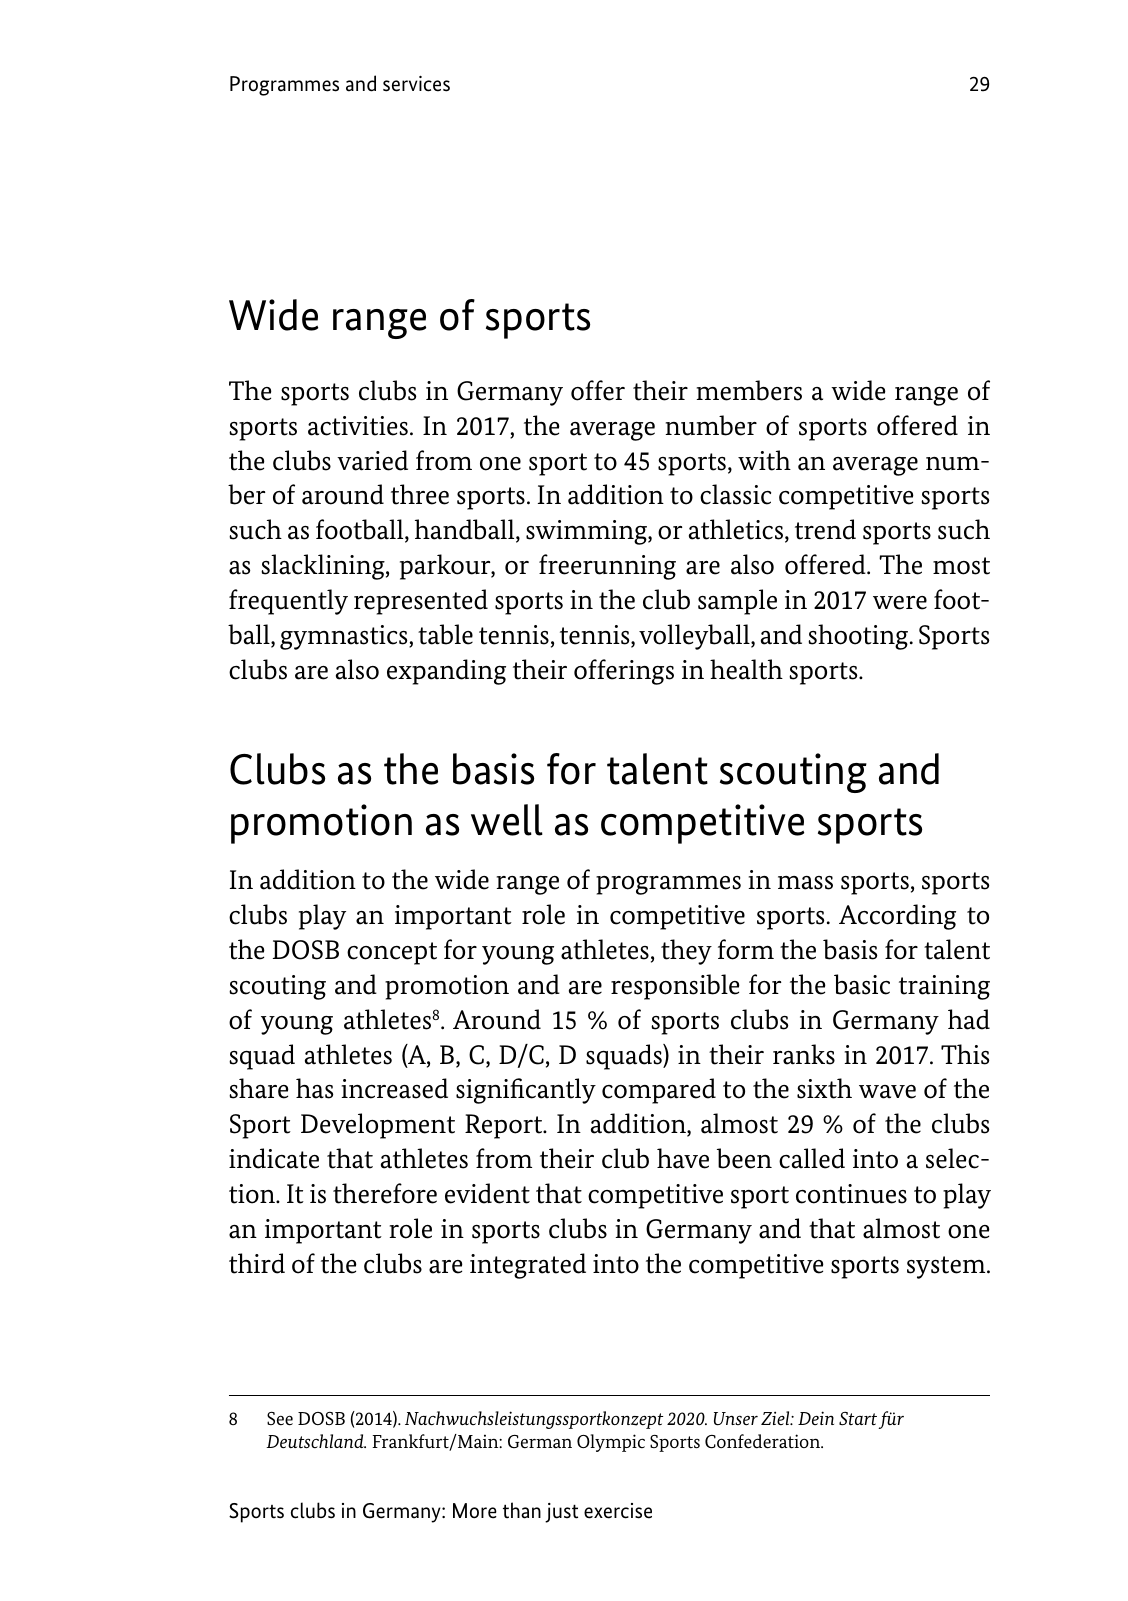 Vorschau SEB-Bericht - Executive Summary - Englisch Seite 29